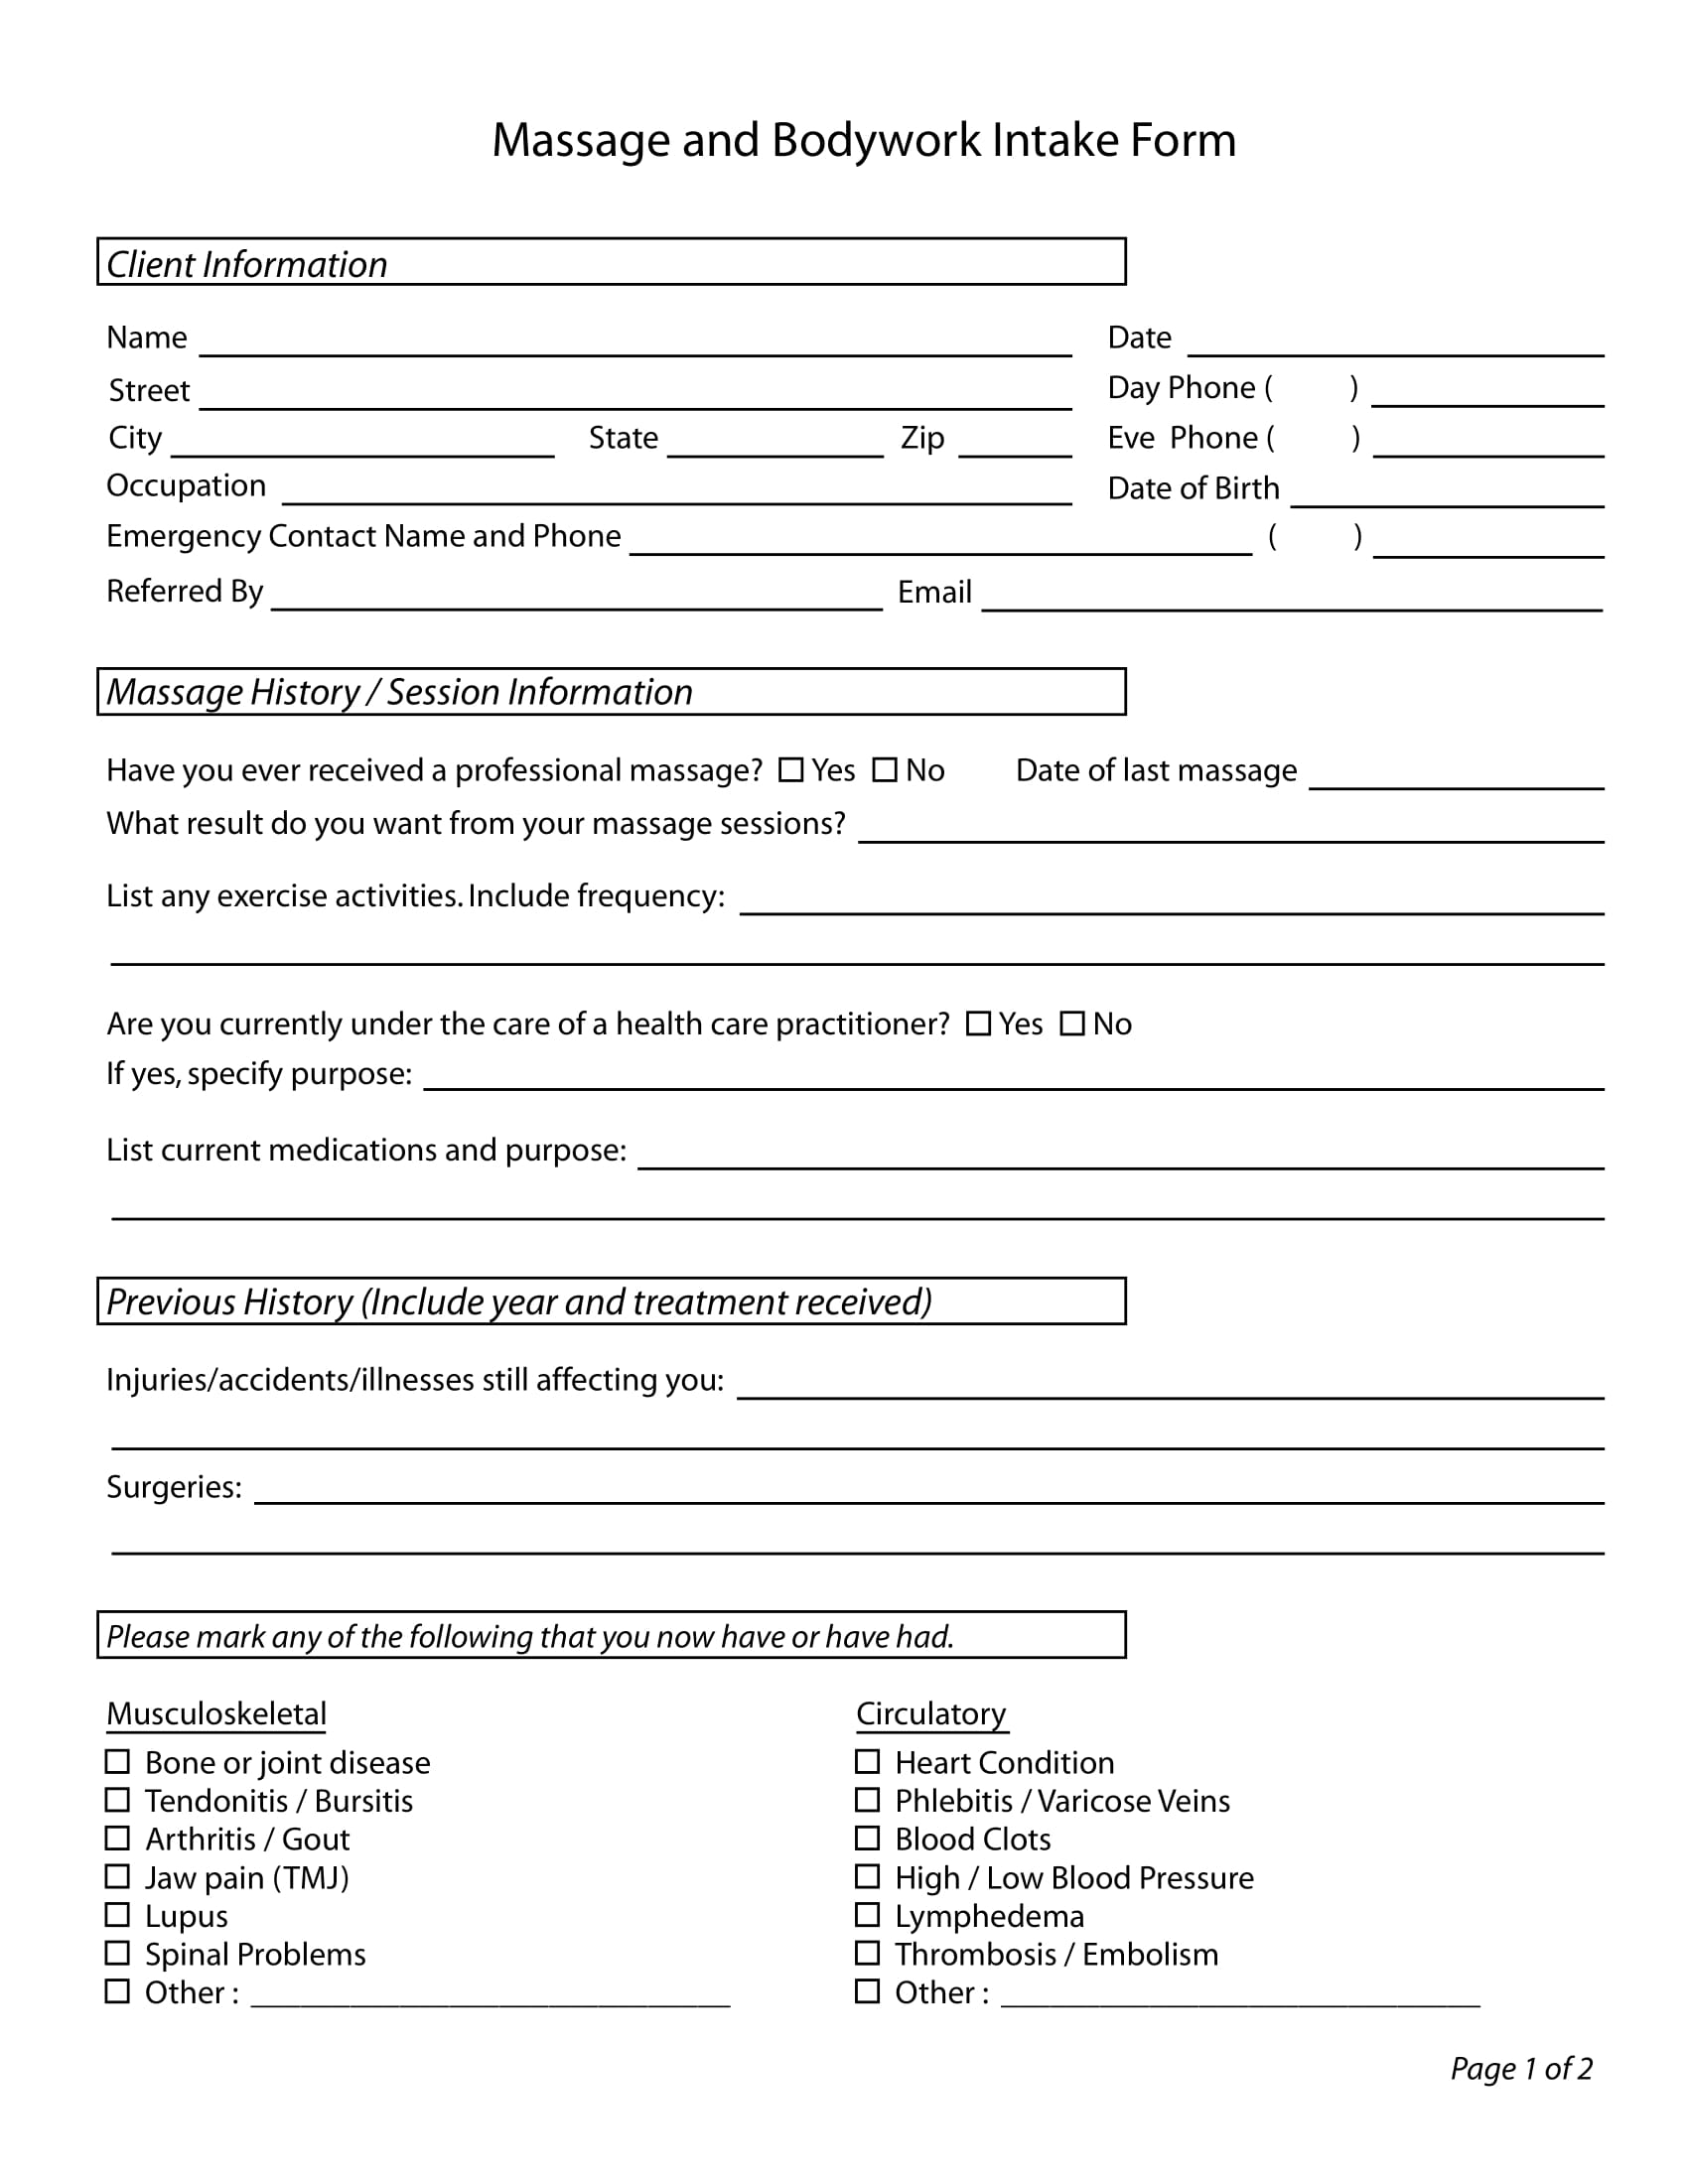 free-5-massage-intake-forms-in-pdf